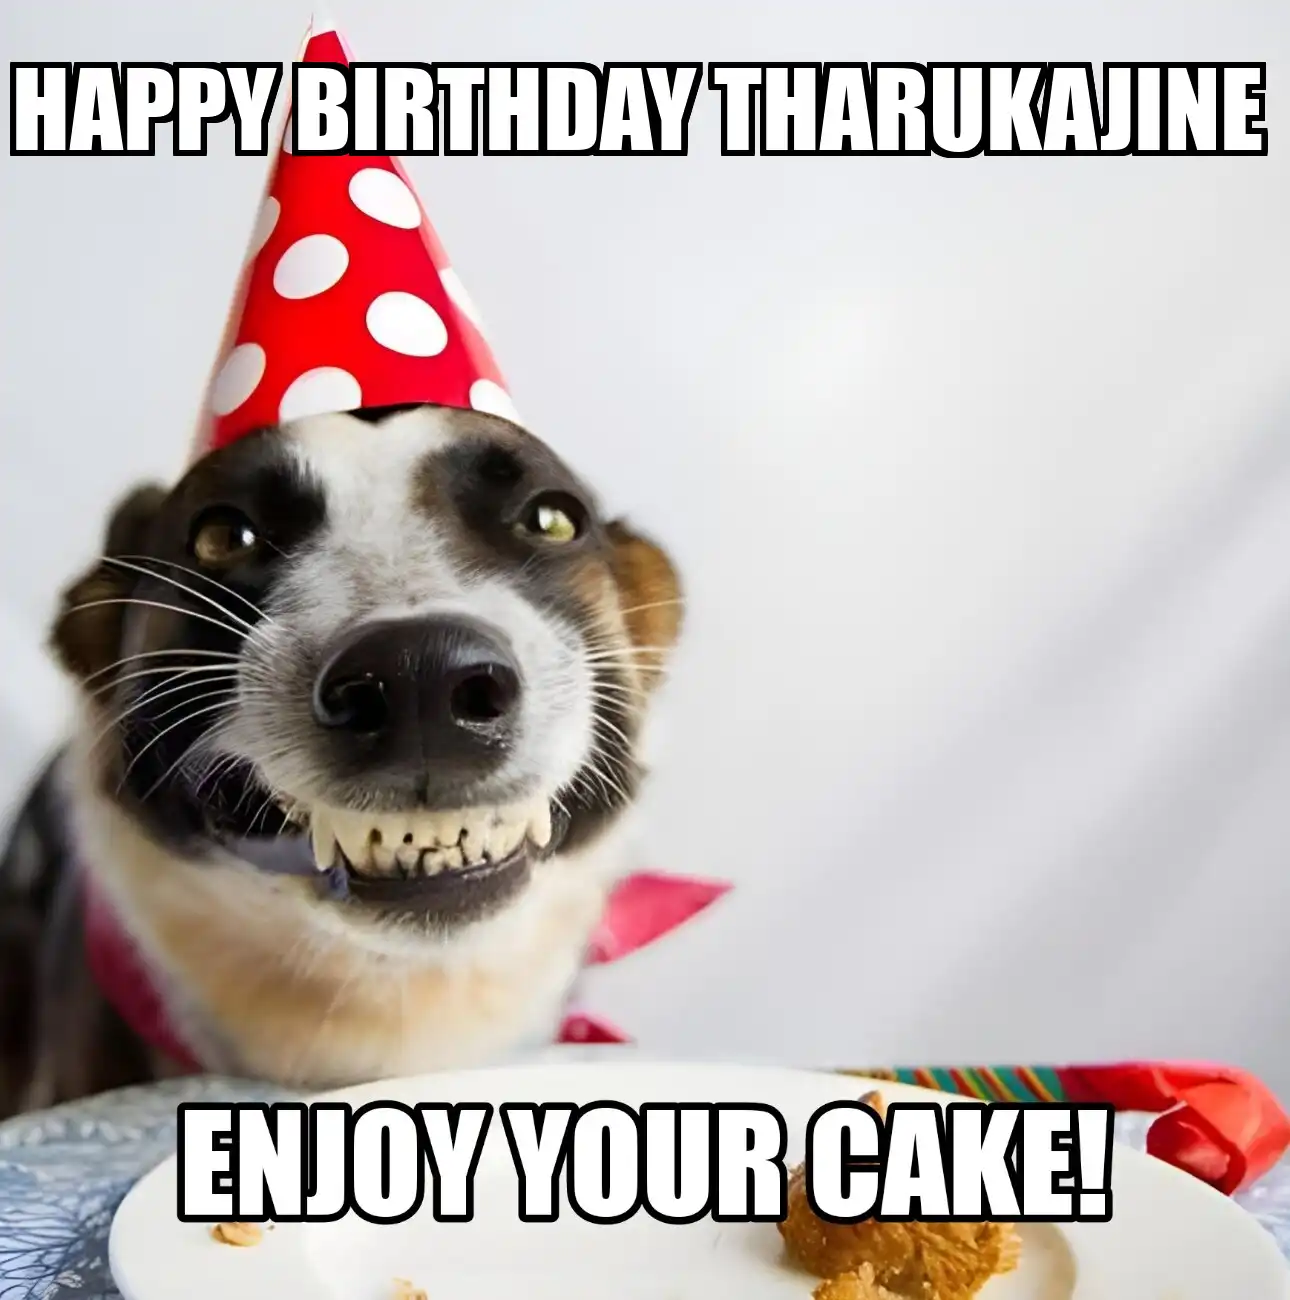 Happy Birthday Tharukajine Enjoy Your Cake Dog Meme